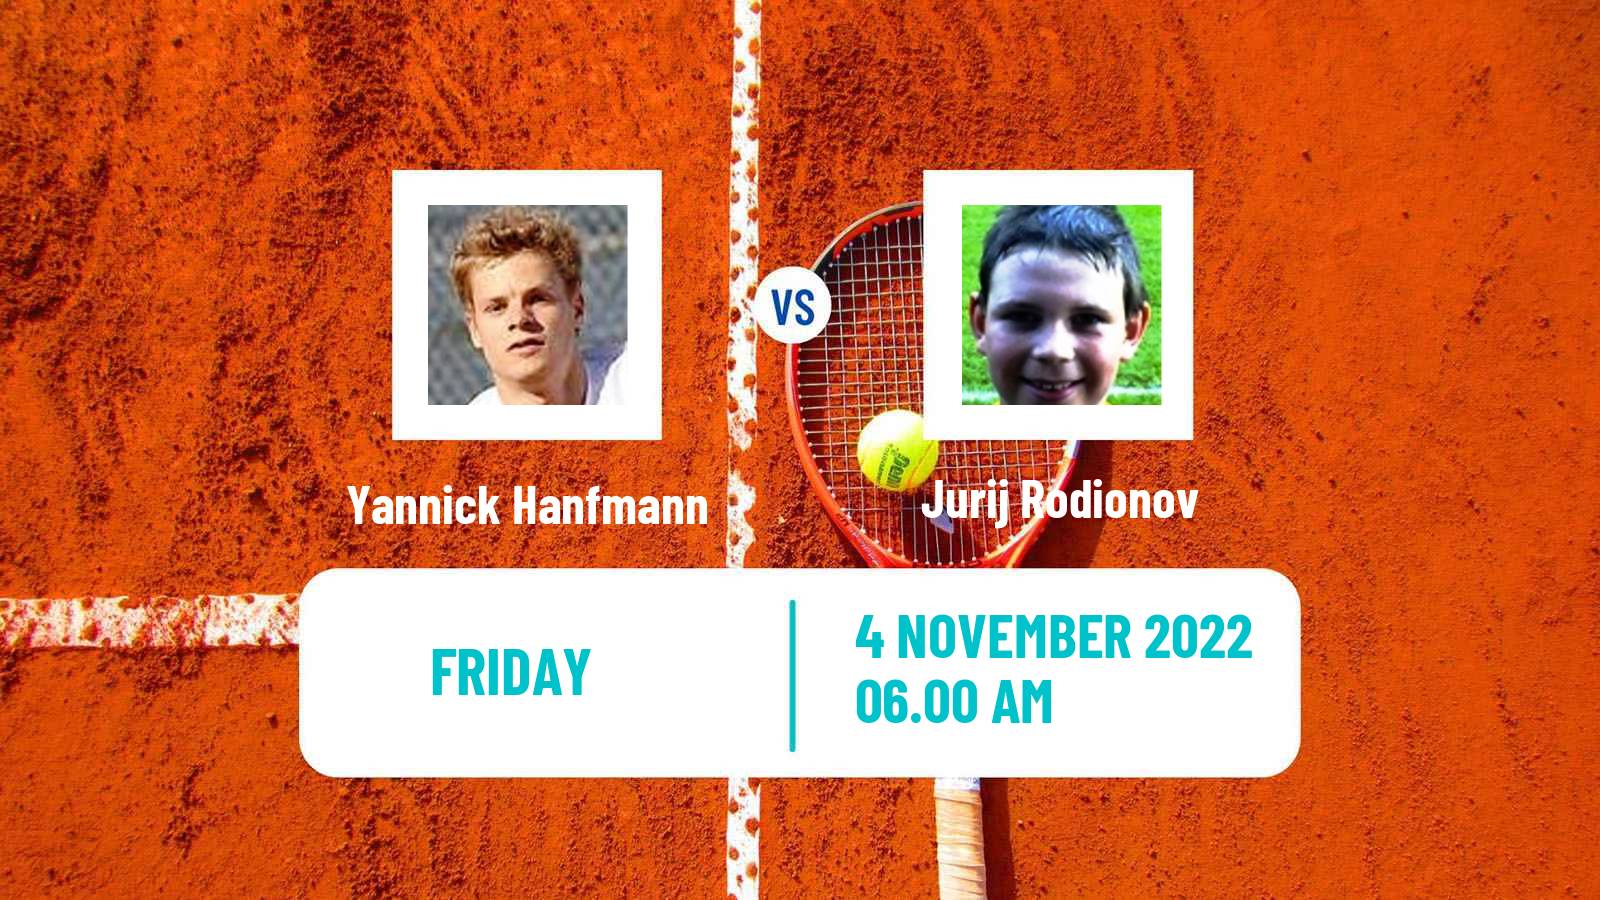 Tennis ATP Challenger Yannick Hanfmann - Jurij Rodionov